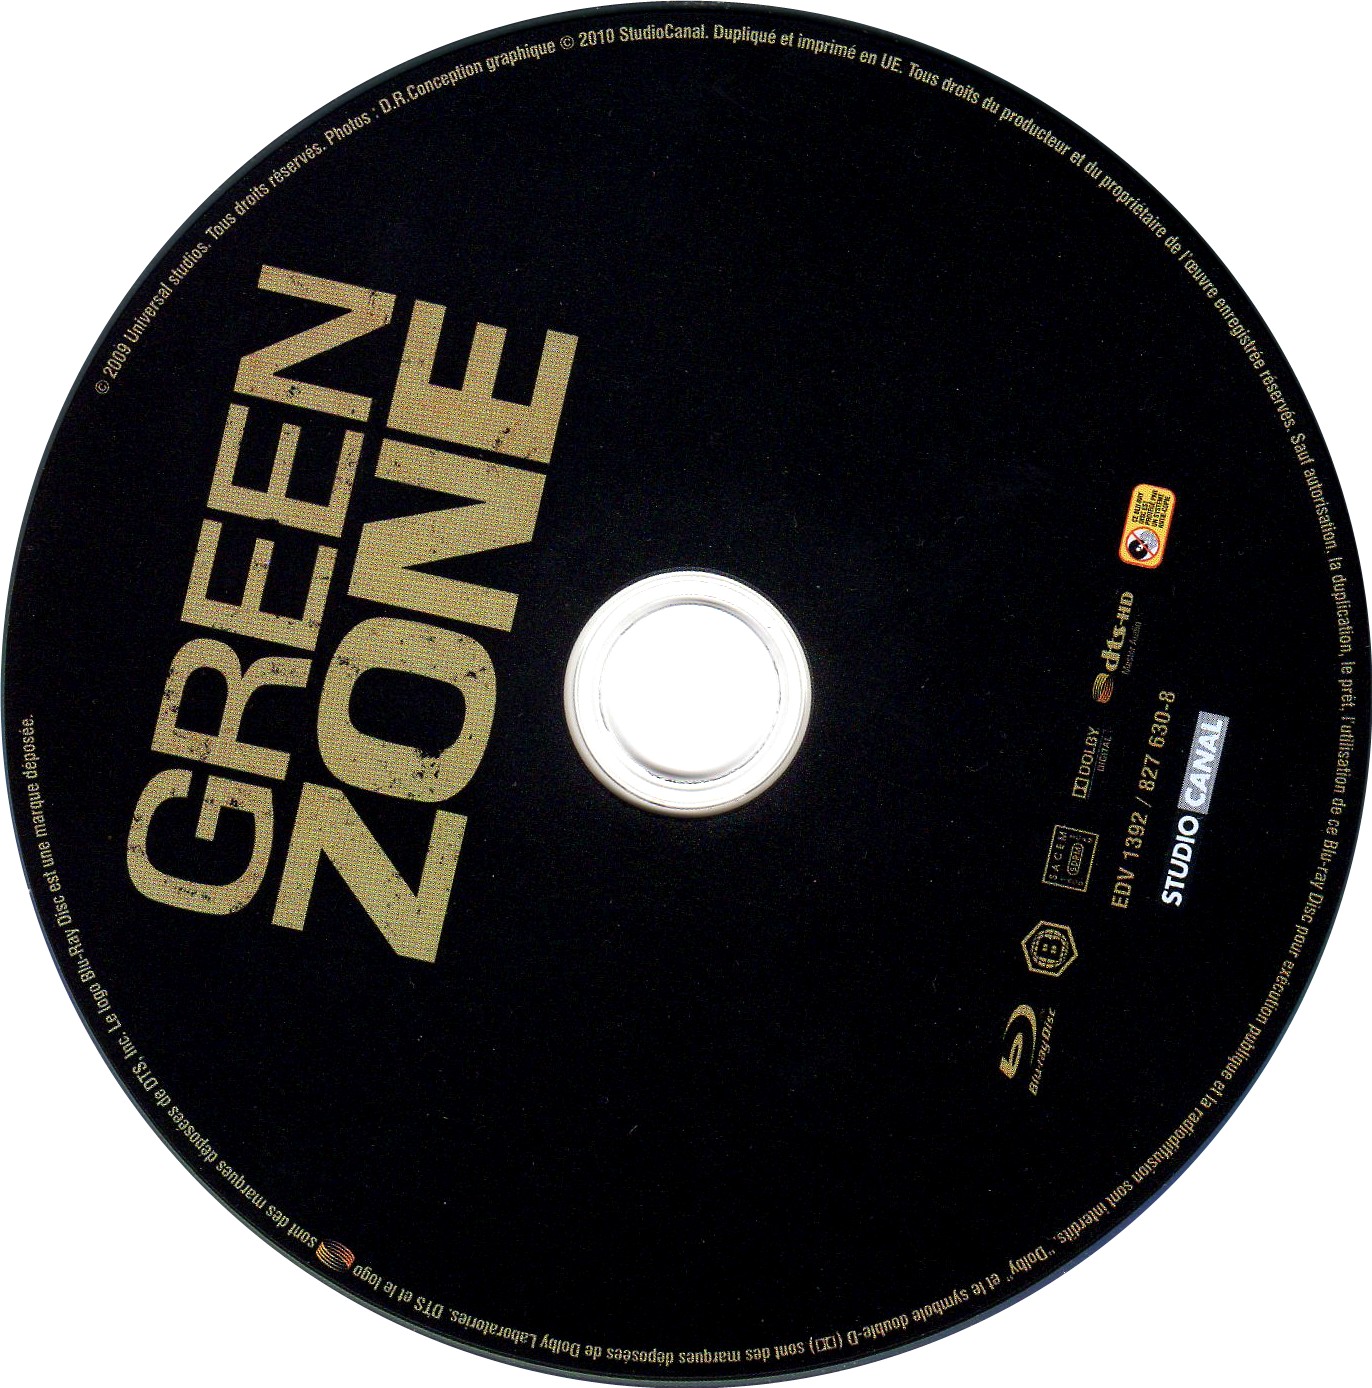 Green zone v2